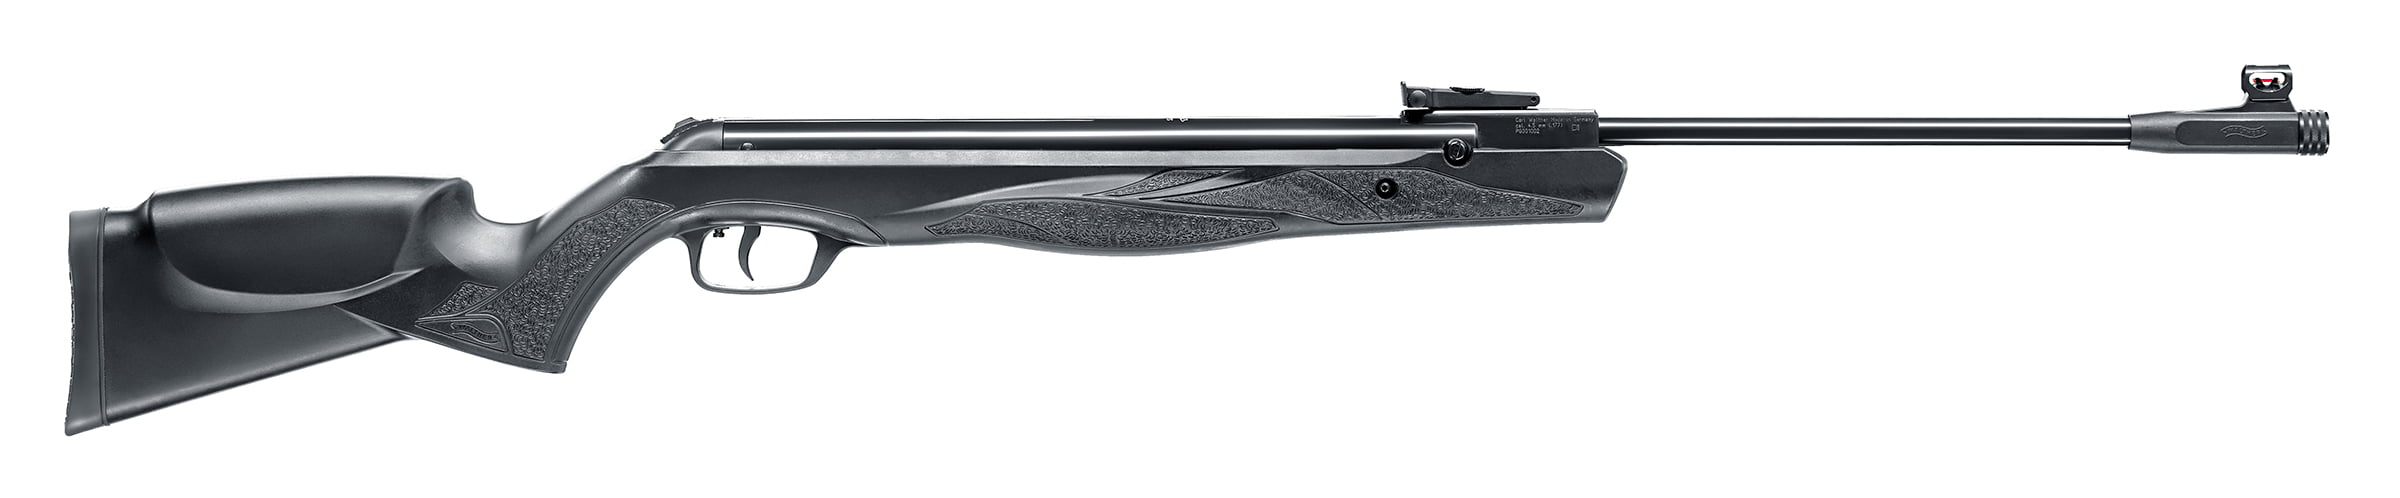 Umarex 2252087 Walther Parrus 177 Break Barrel Pellet Rifle Black Lother 1200fps for sale online 